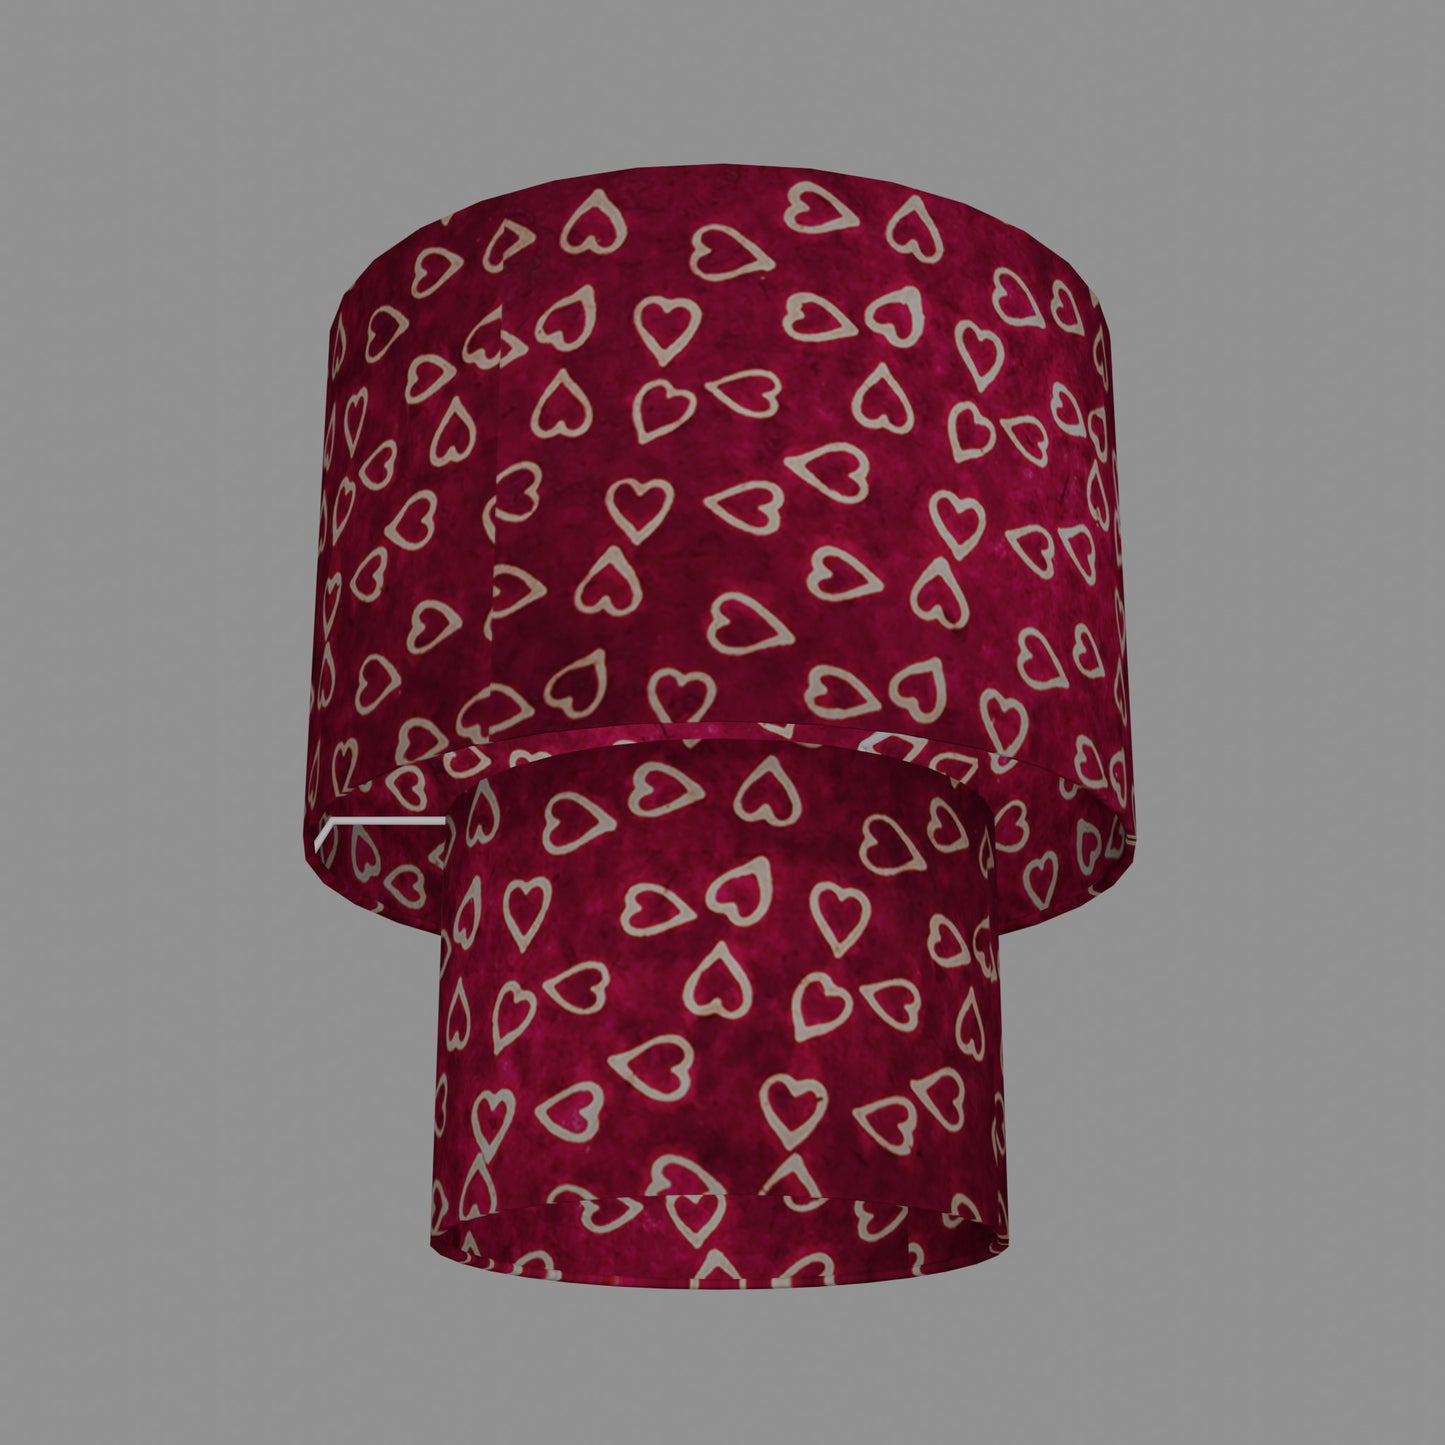 2 Tier Lamp Shade - P16 - Batik Hearts on Cranberry, 30cm x 20cm & 20cm x 15cm